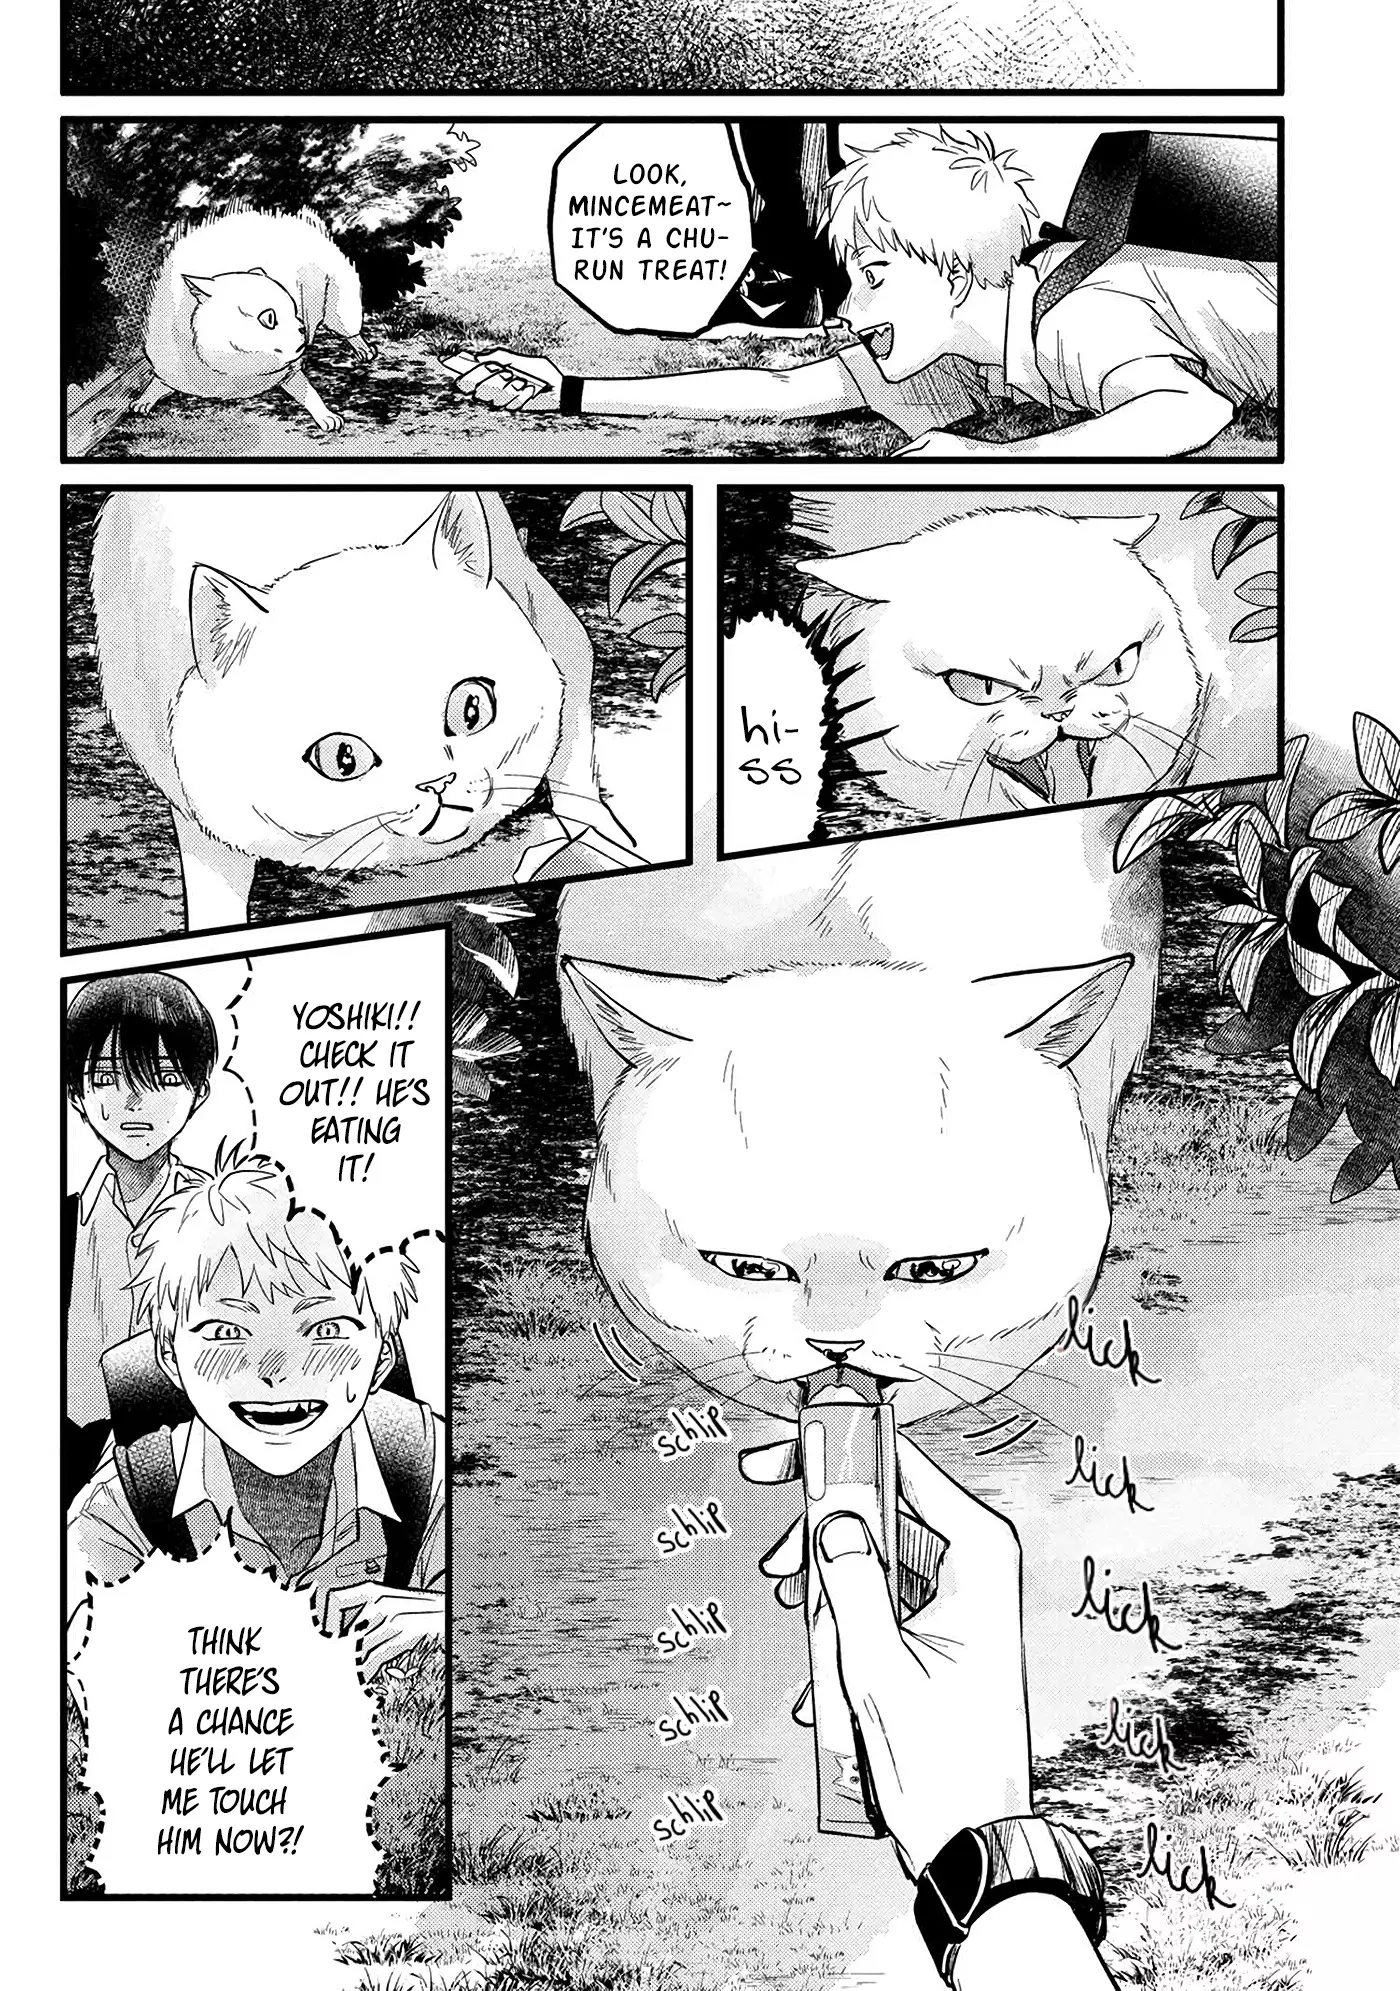 Hikaru Ga Shinda Natsu - 8 page 6-23bdaab5